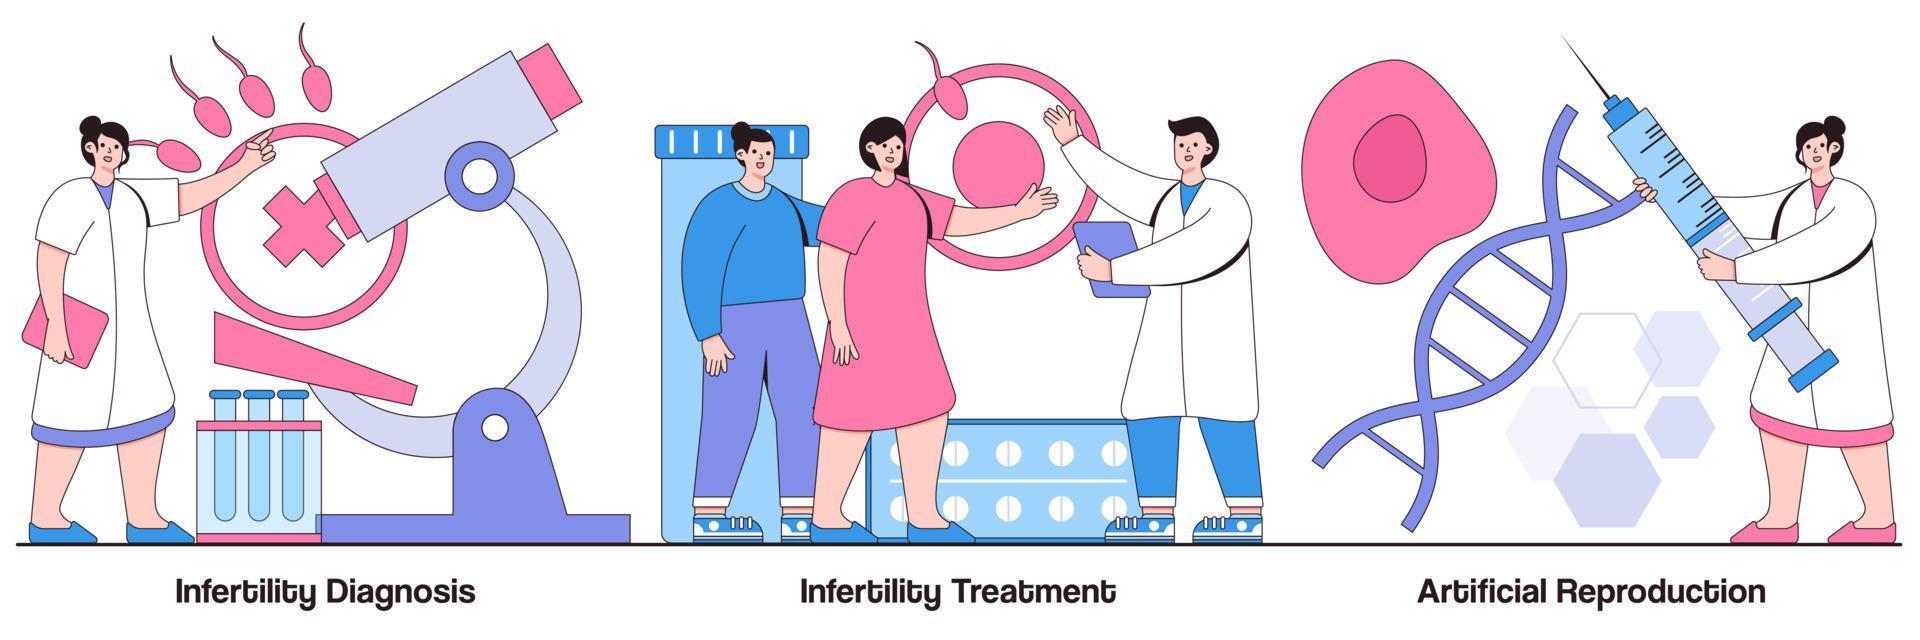 infertilitetsdiagnos, infertilitetsbehandling och artificiell reproduktion illustrerad förpackning vektor